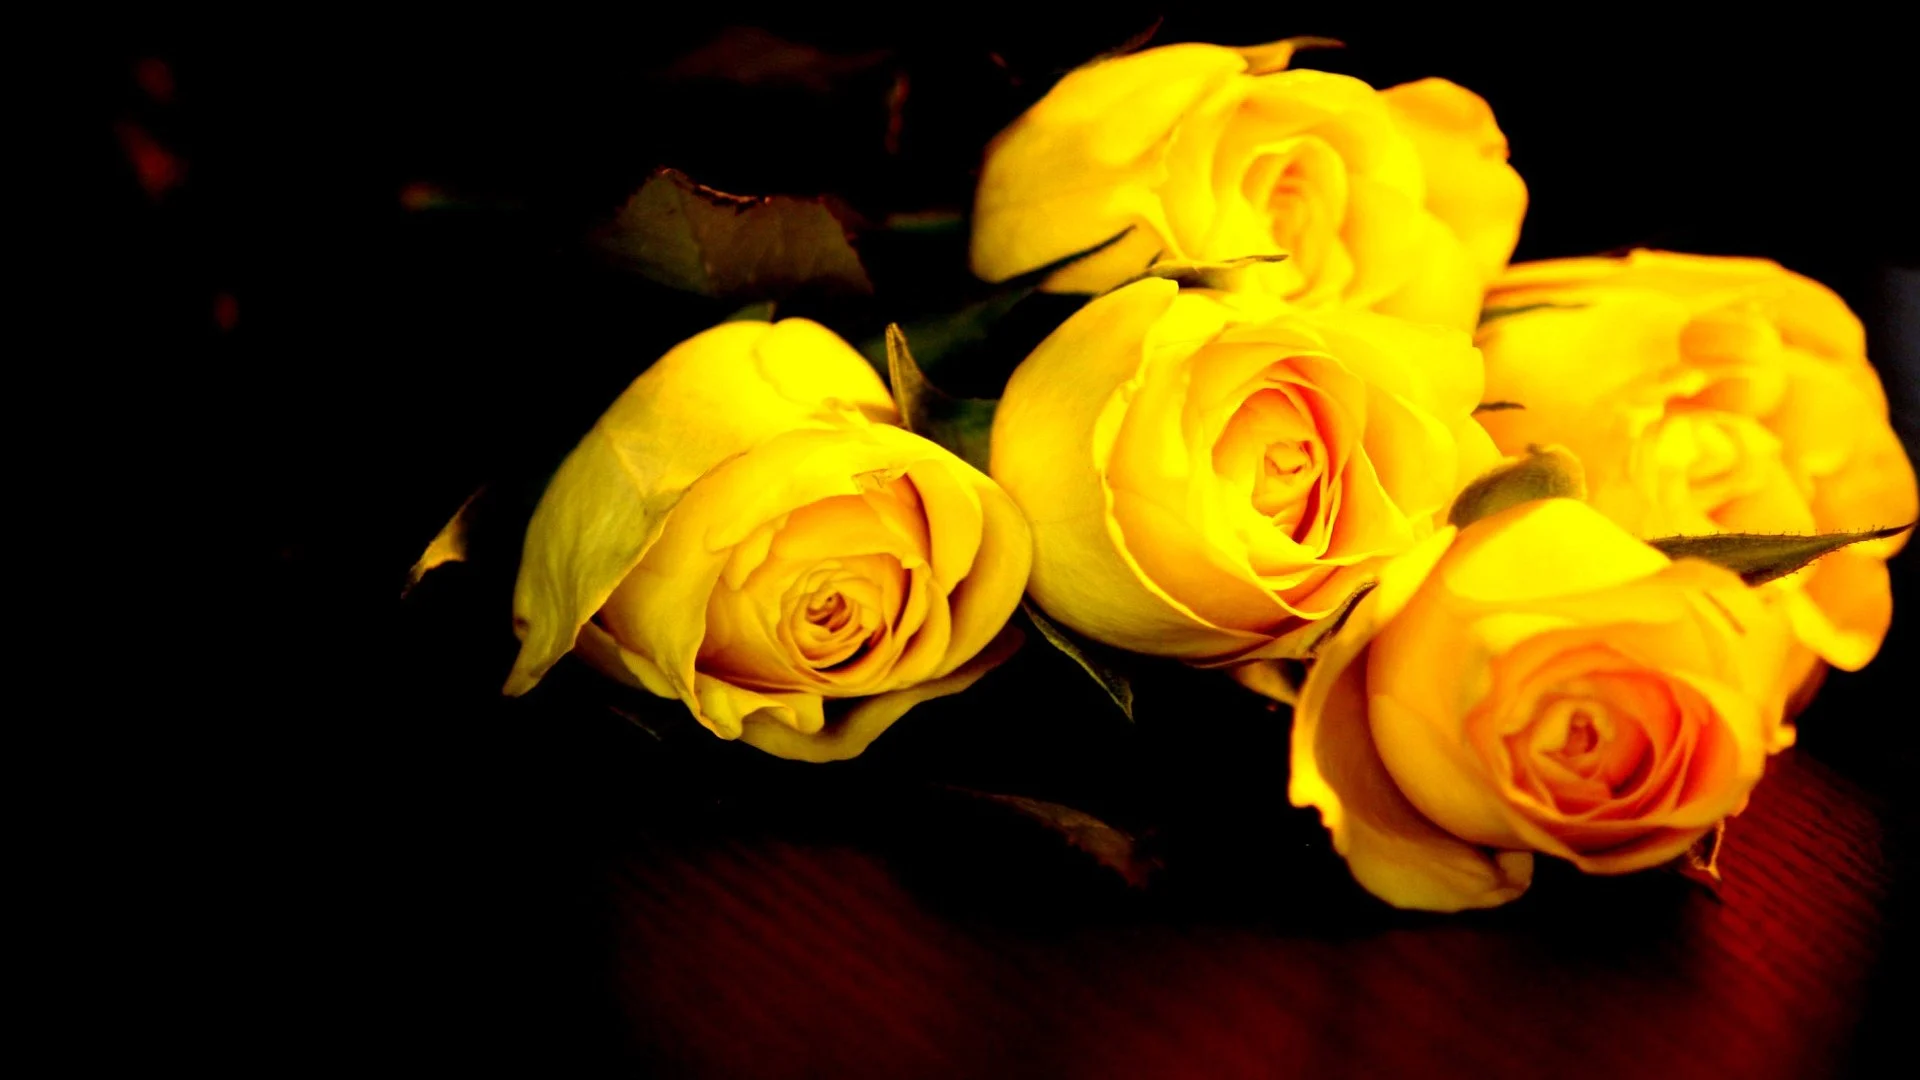 Hình nền : Hoa màu vàng, Gần, Vĩ mô, màu vàng, trái cam, Cánh hoa, bông hồng,  Đào, 1280x853 px, Hình nền máy tính, Đóng lên, Chụp macro, Nhiếp ảnh cuộc  sống